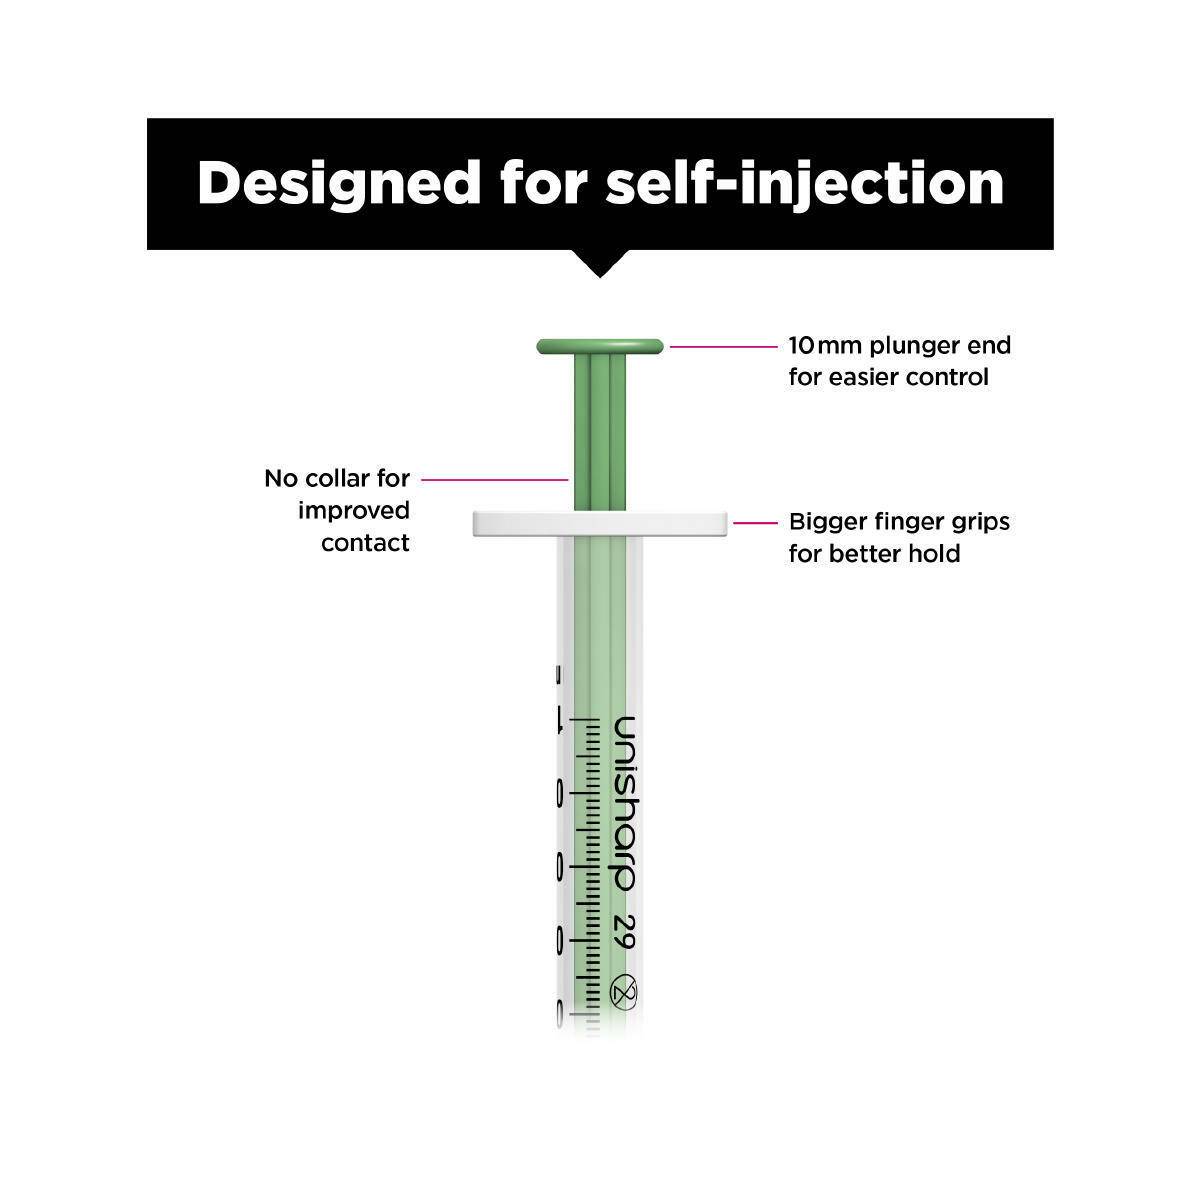 1ml 0.5 inch 29g Green Unisharp Syringe and Needle u100 - UKMEDI